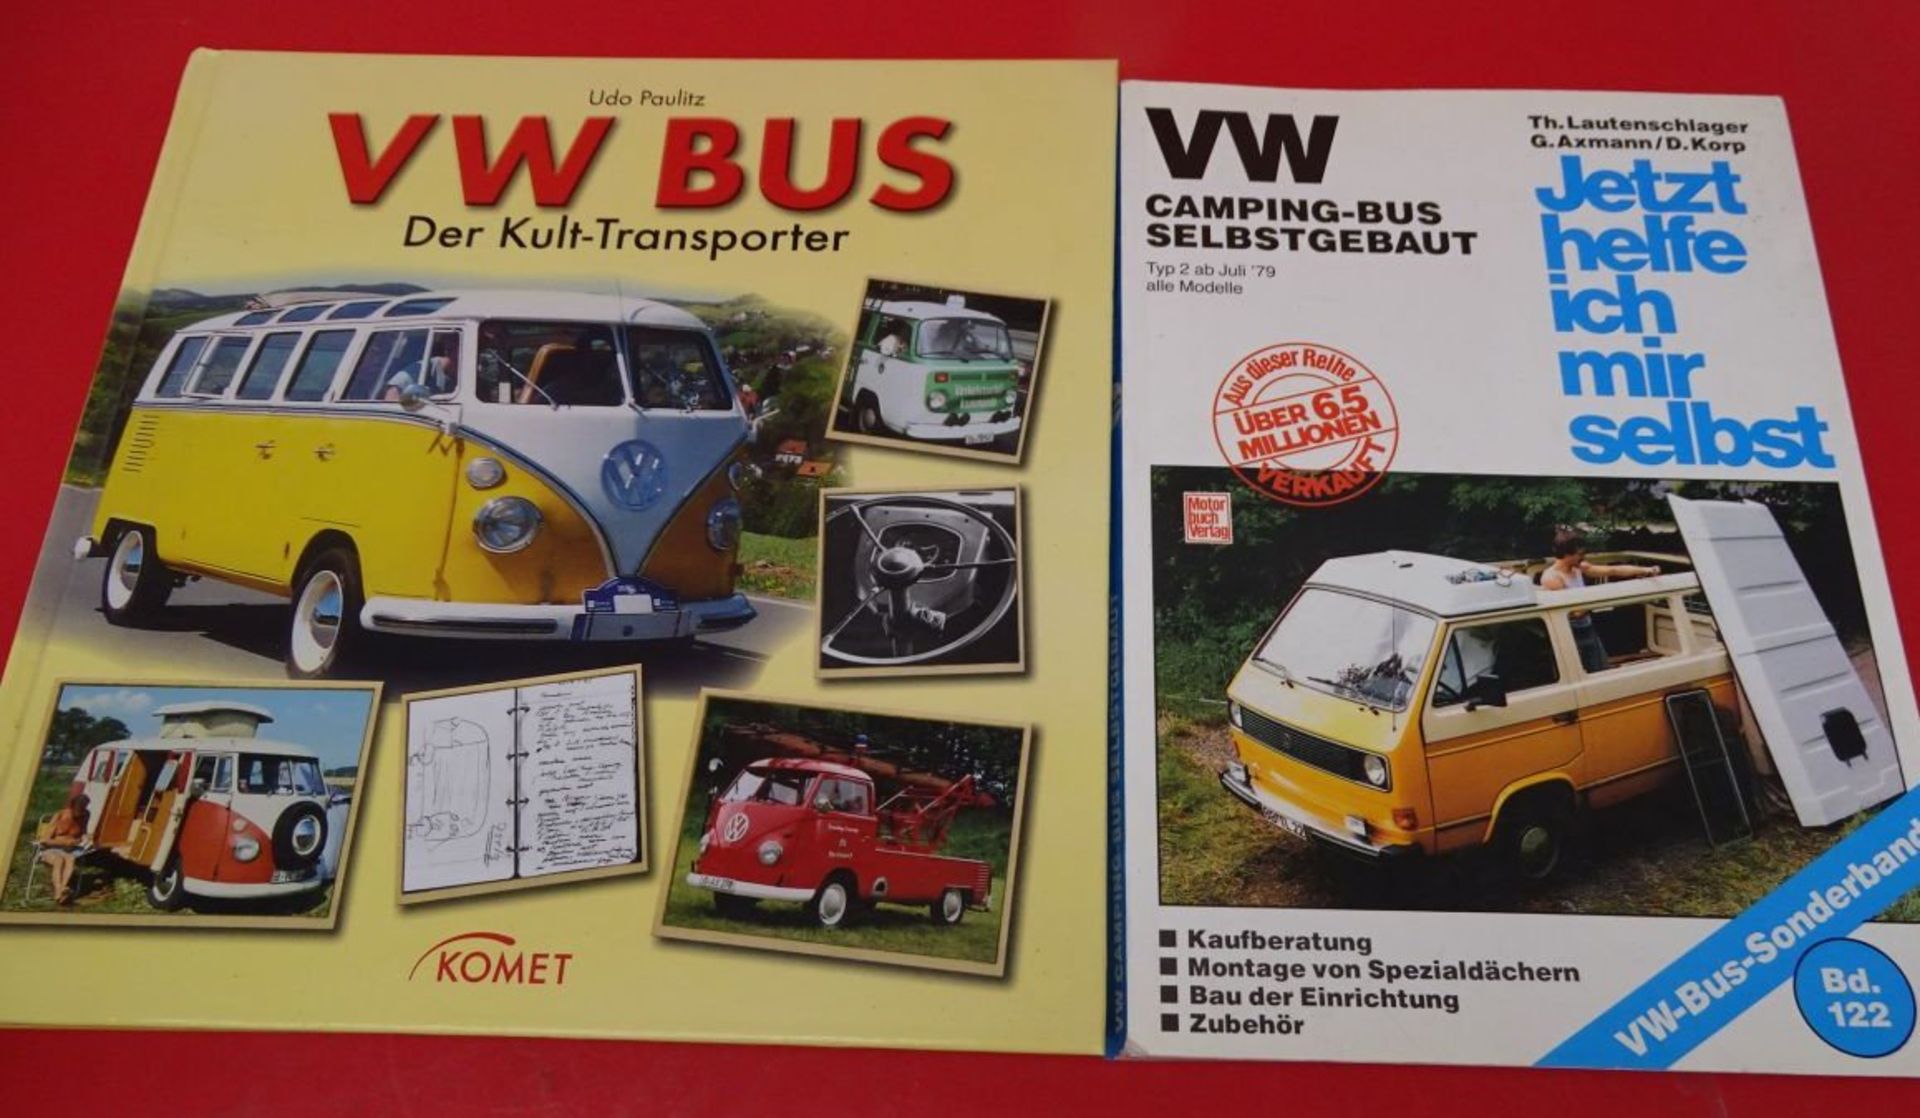 Ravensburger 3D Puzzle "VW Bus" in OVP, anbei 2 Bücher über VW Busse, 1x "Wie helfe ich mir selbst" - Bild 4 aus 9